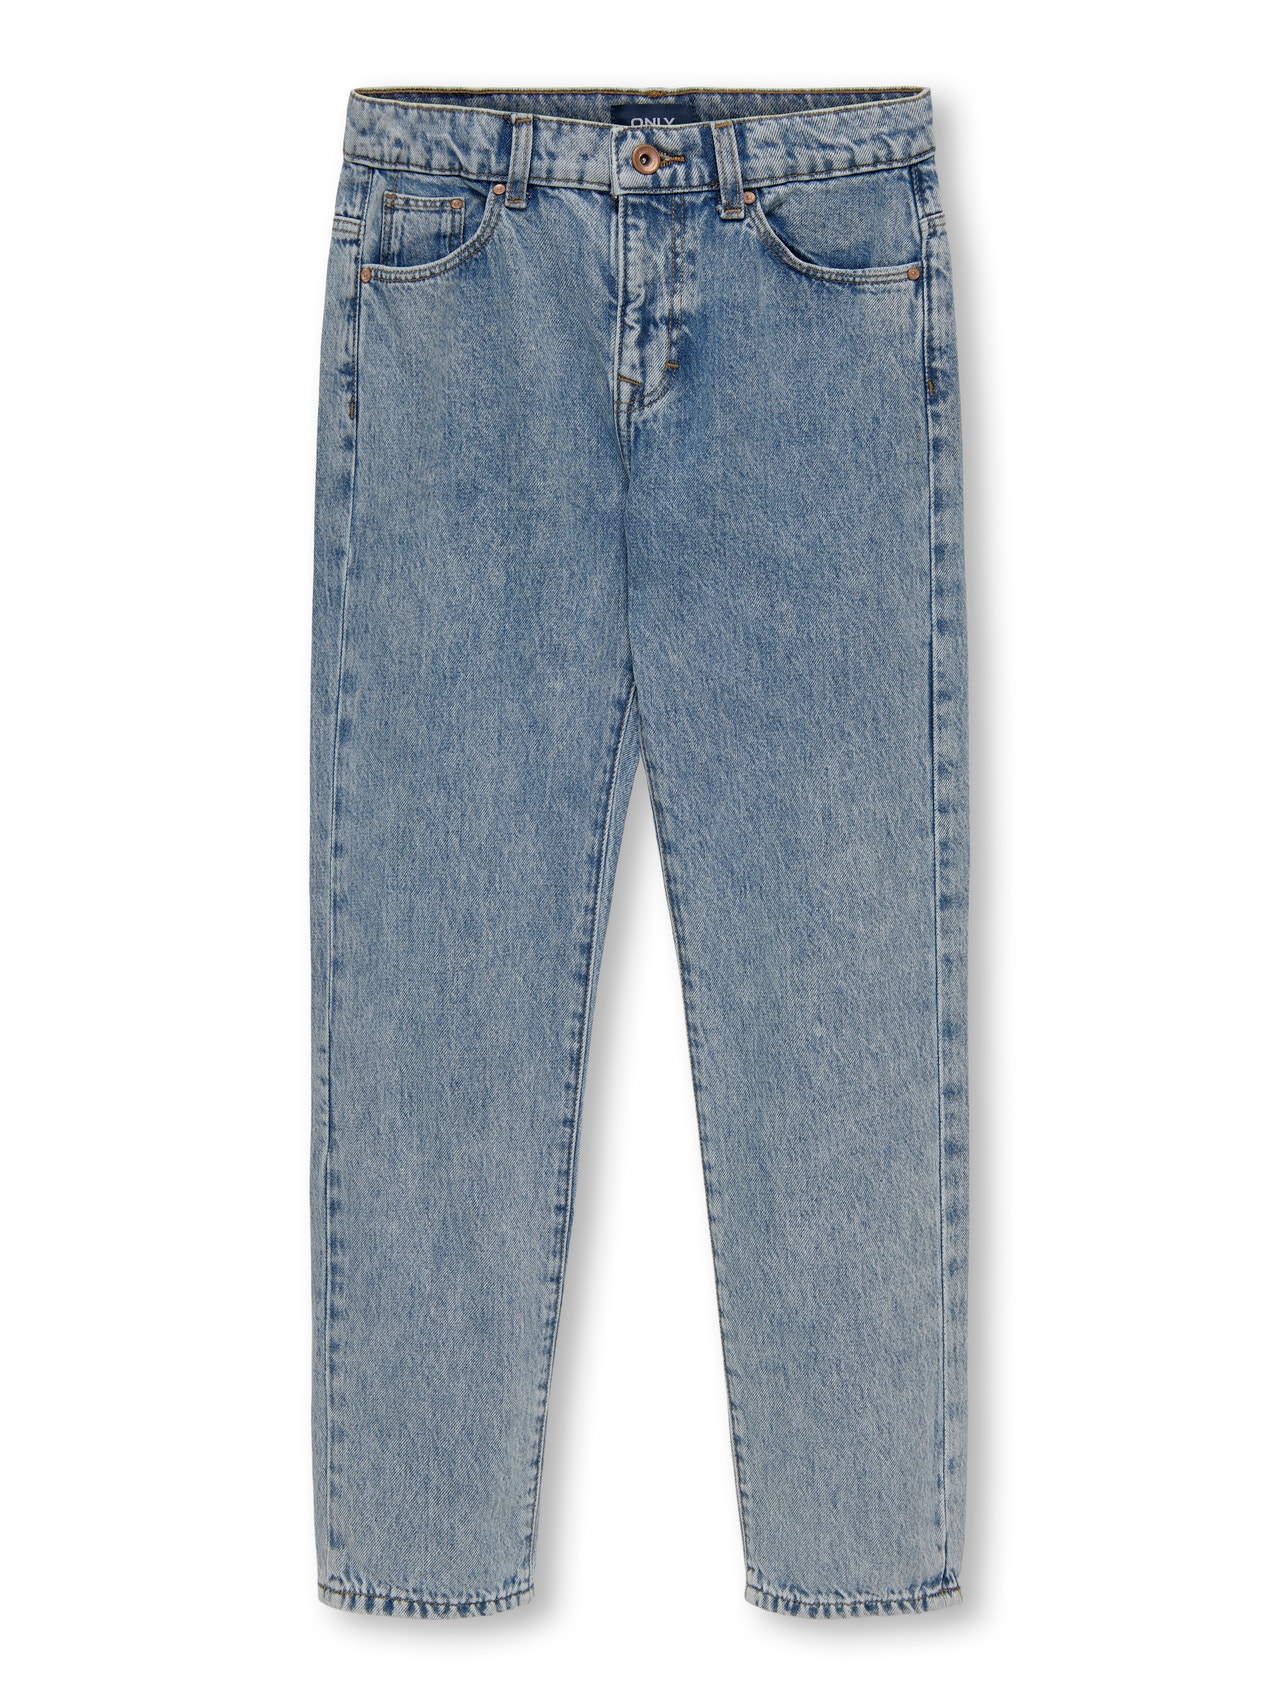 ONLY Jeans Loose Fit -Light Blue Denim - 15265530